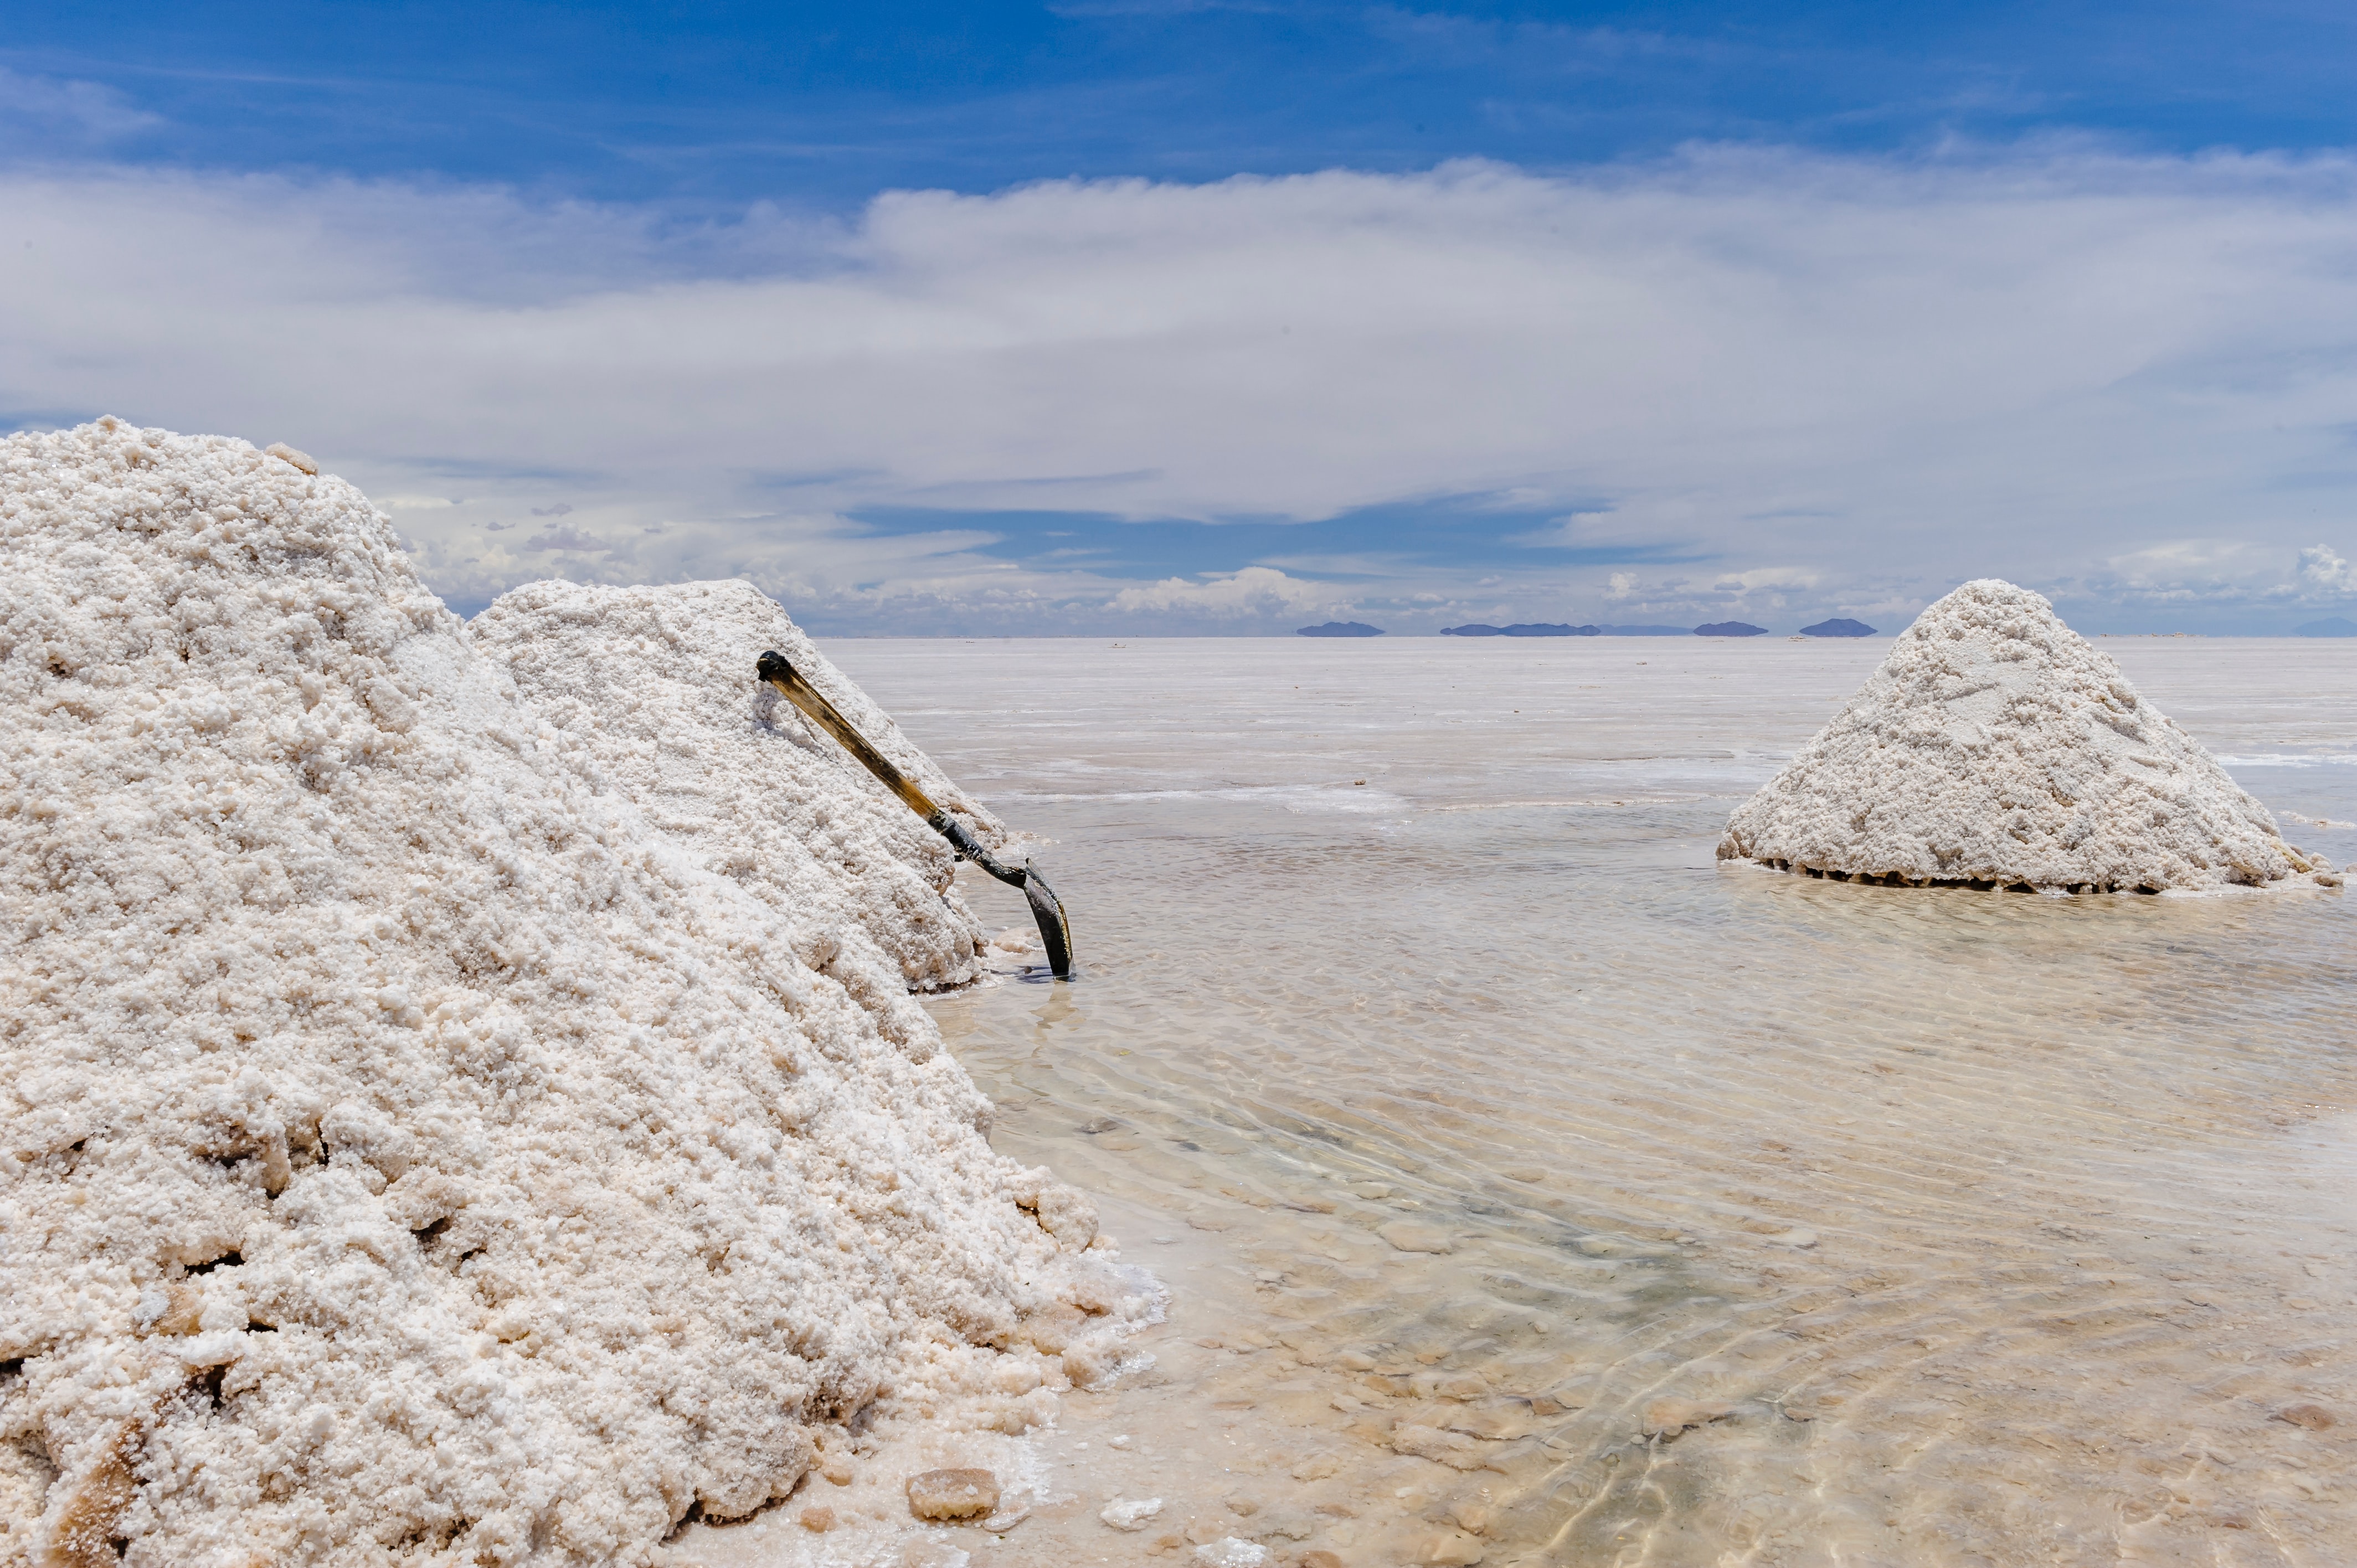 Colheita de sal no deserto de sal de Uyuni, na Bolívia.